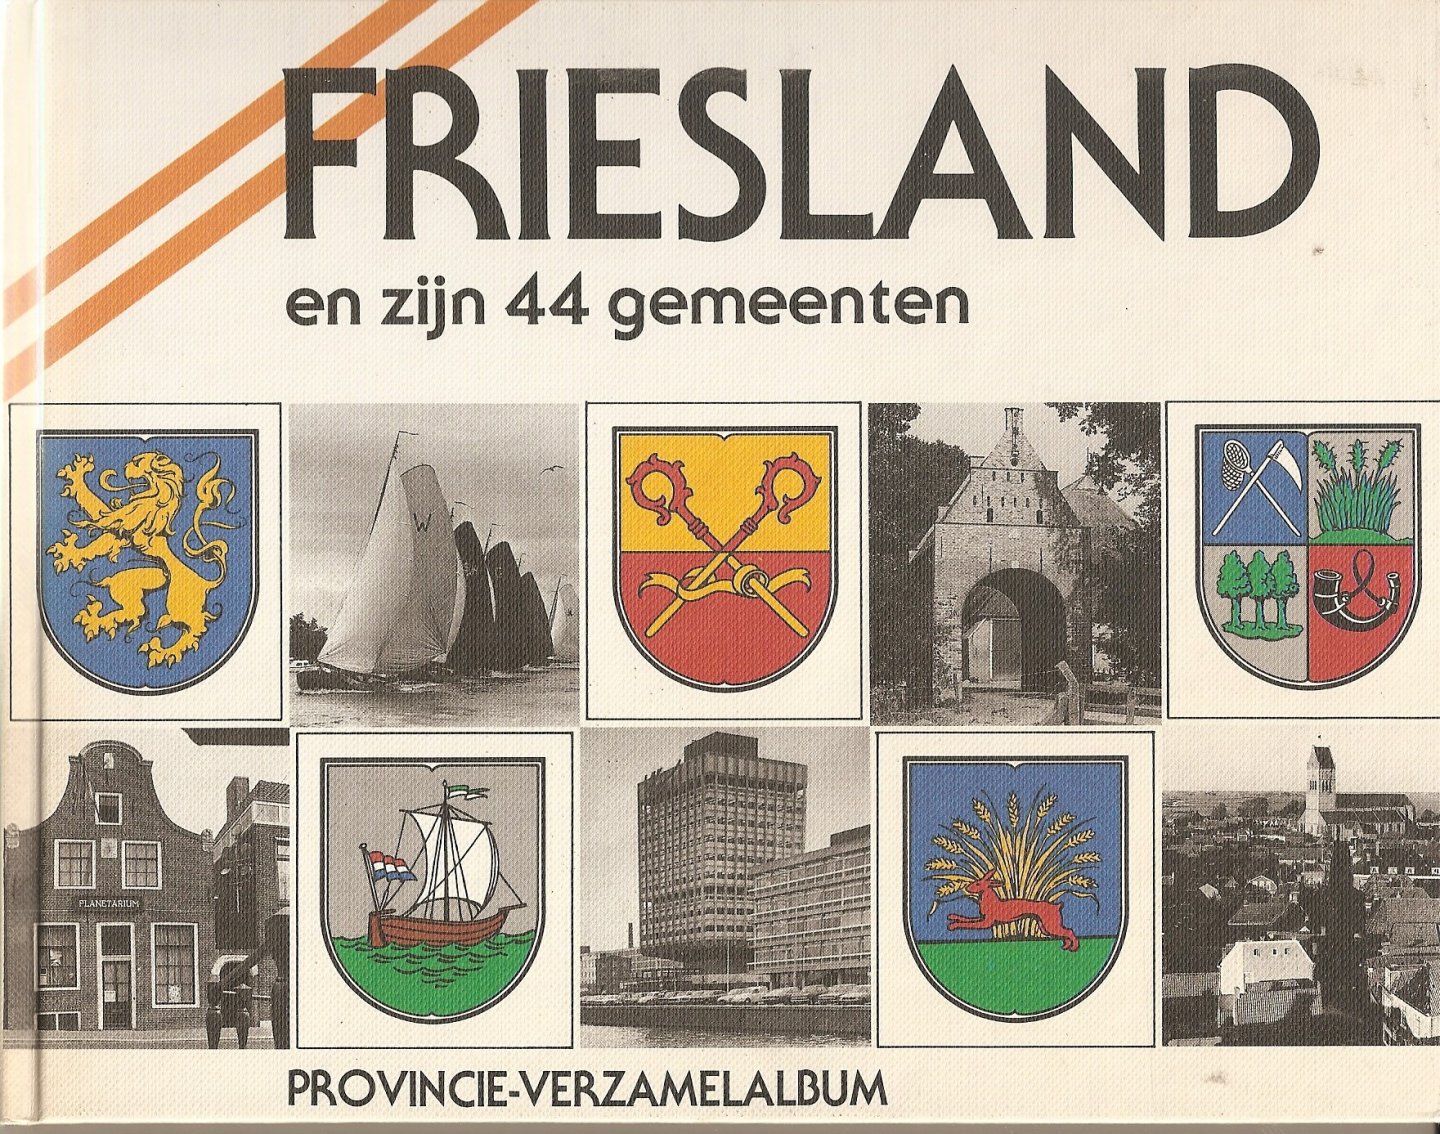 Jansma, Klaas - Friesland en zijn 44 gemeenten.